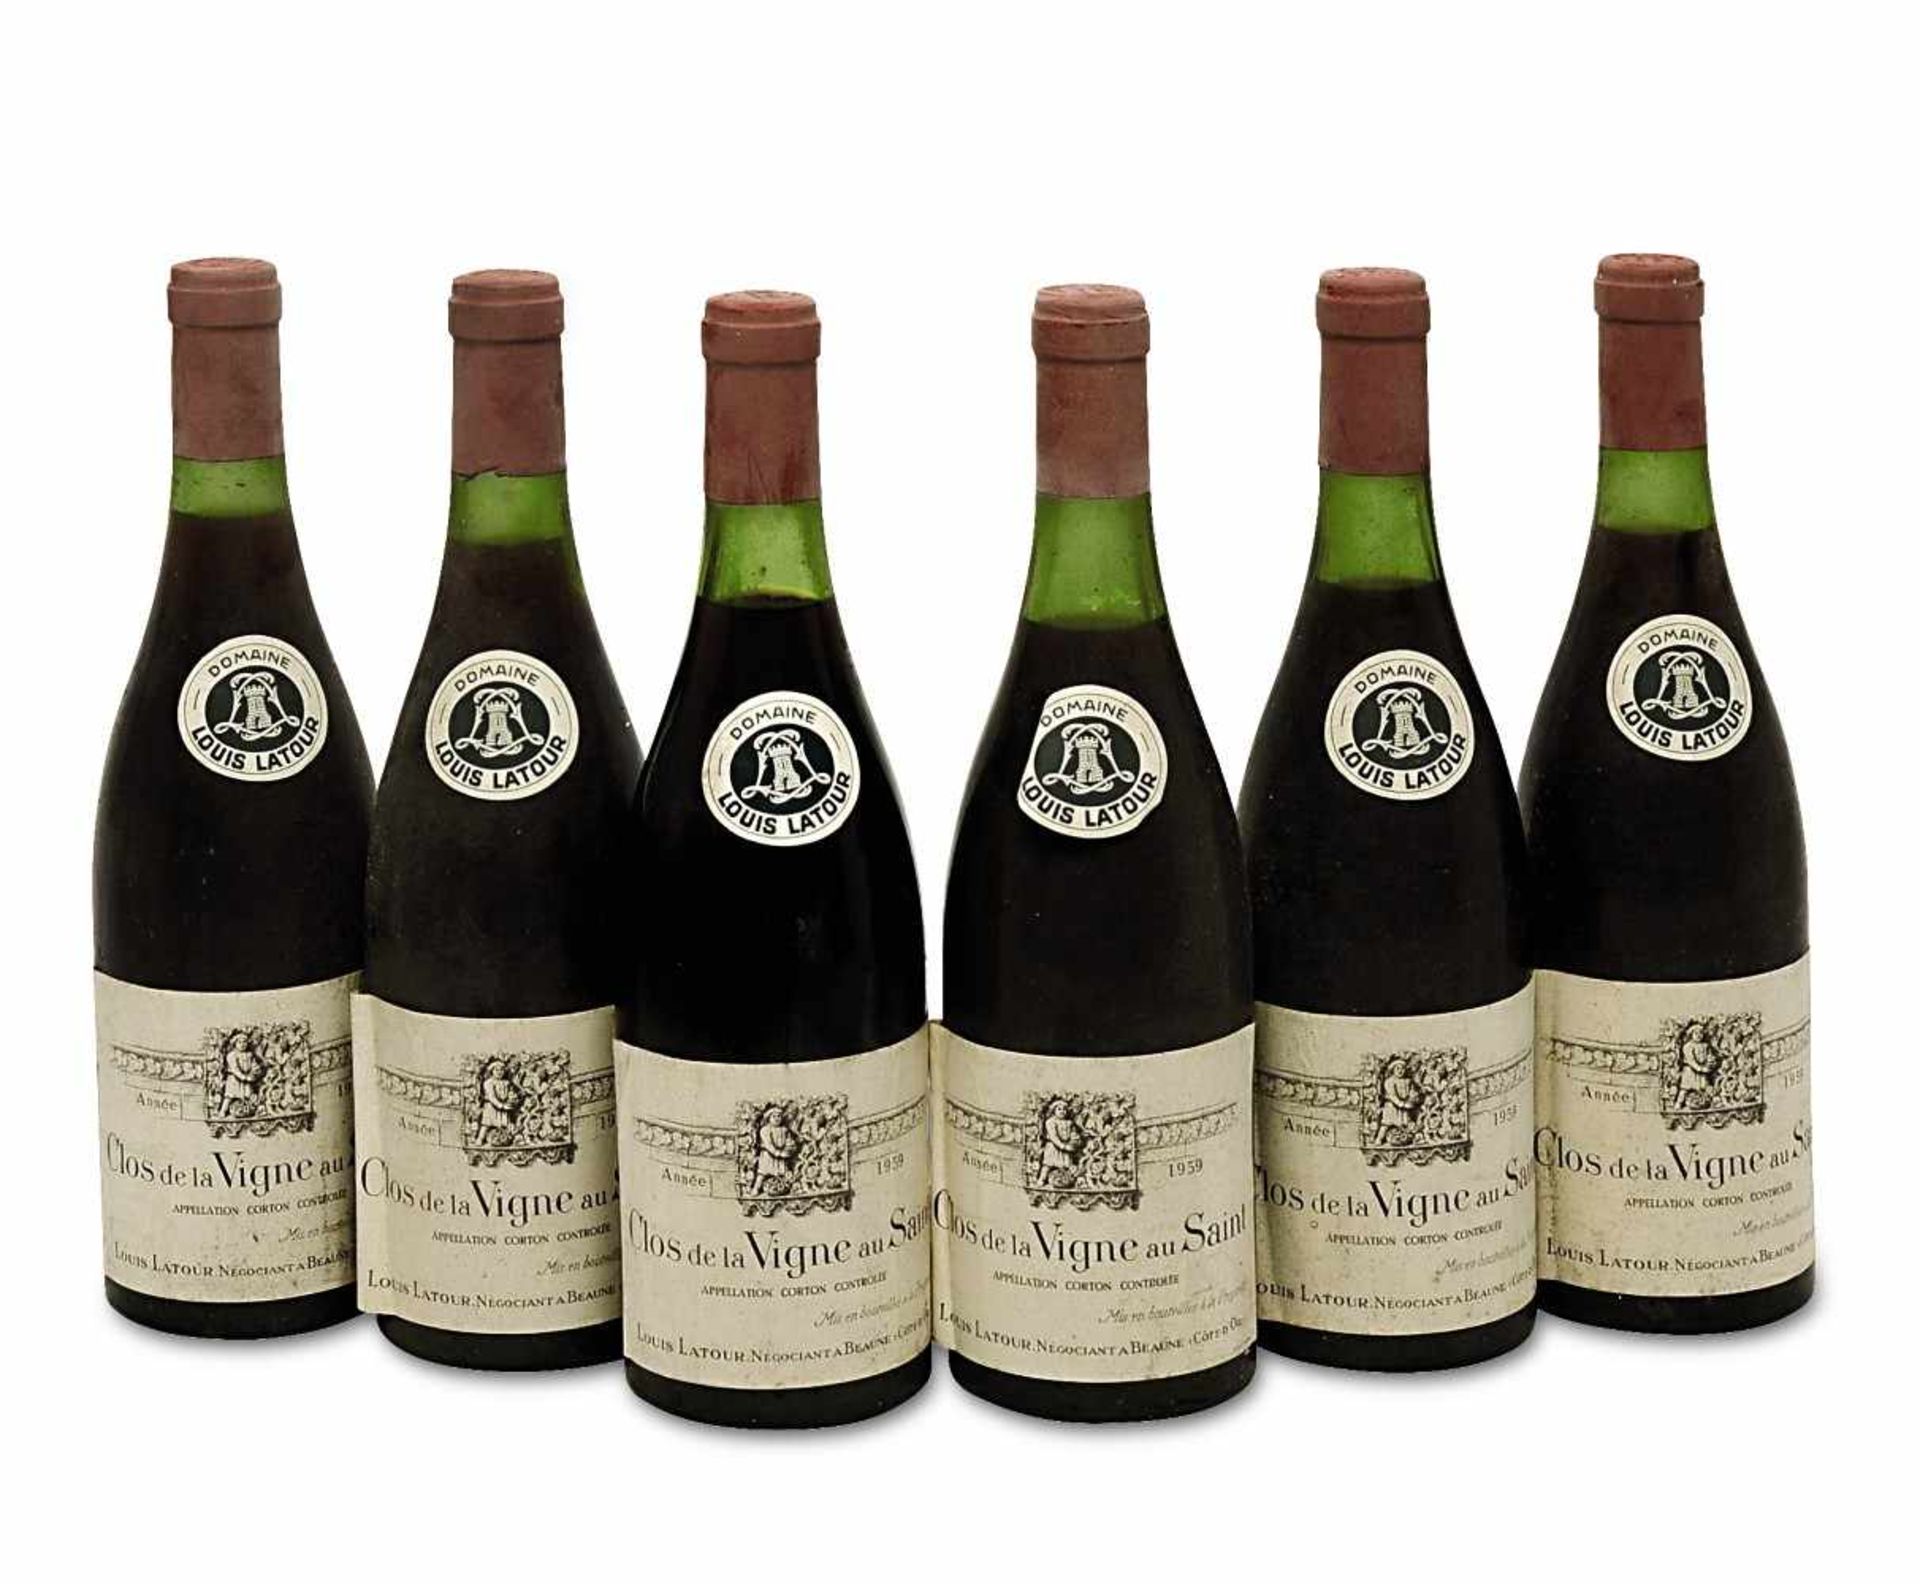 Sechs Flaschen Clos de la Vigne au Saint Côte de Beaune, Burgund, Frankreich Louis Latour, Corton